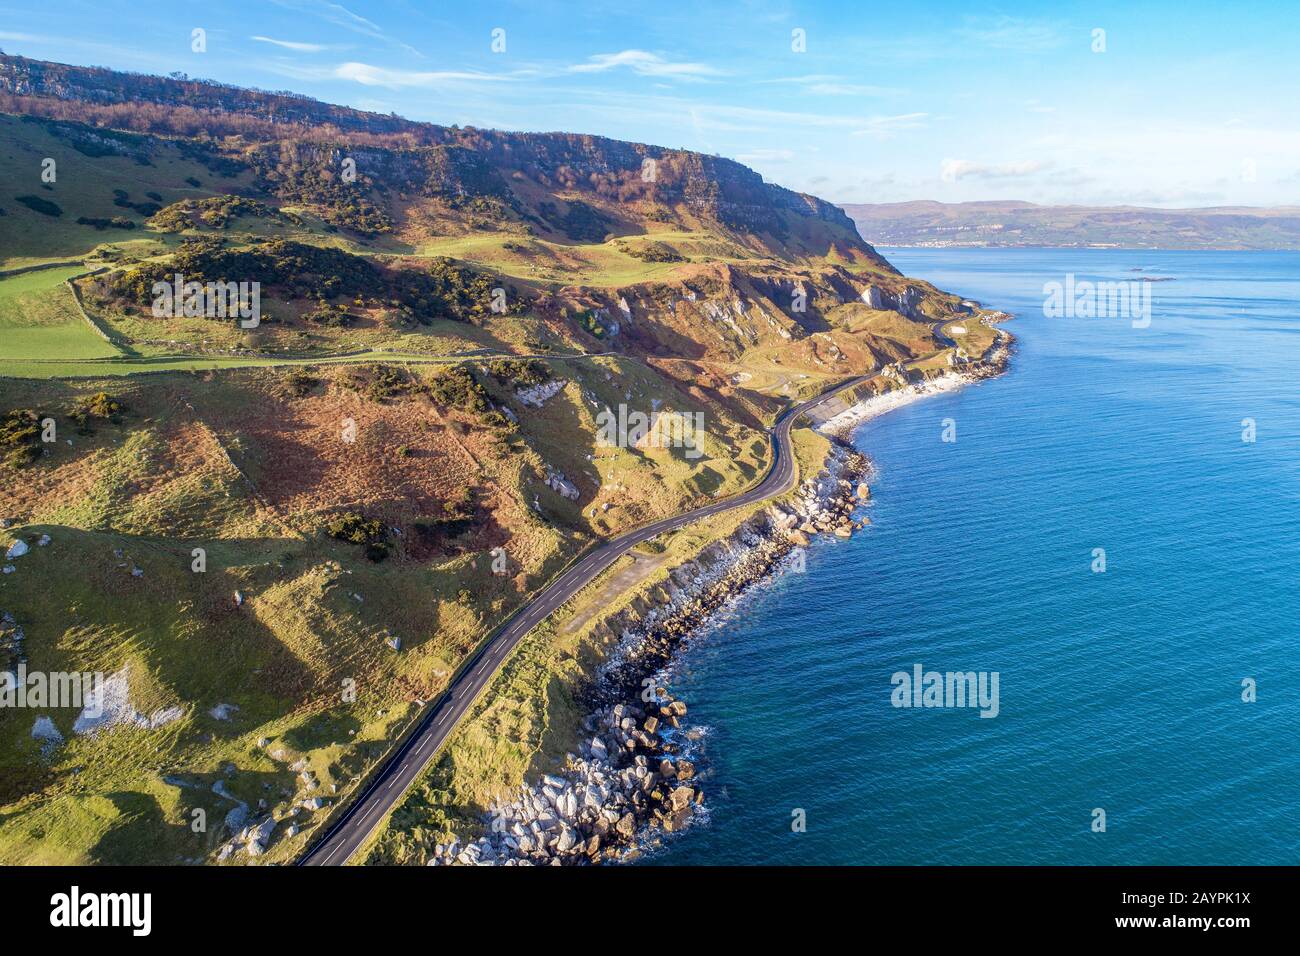 Costa atlántica de Irlanda del Norte, Antrim Coast Road, también conocida como ruta costera Causeway, Una de las carreteras costeras más pintorescas de Europa. Vista aérea Foto de stock